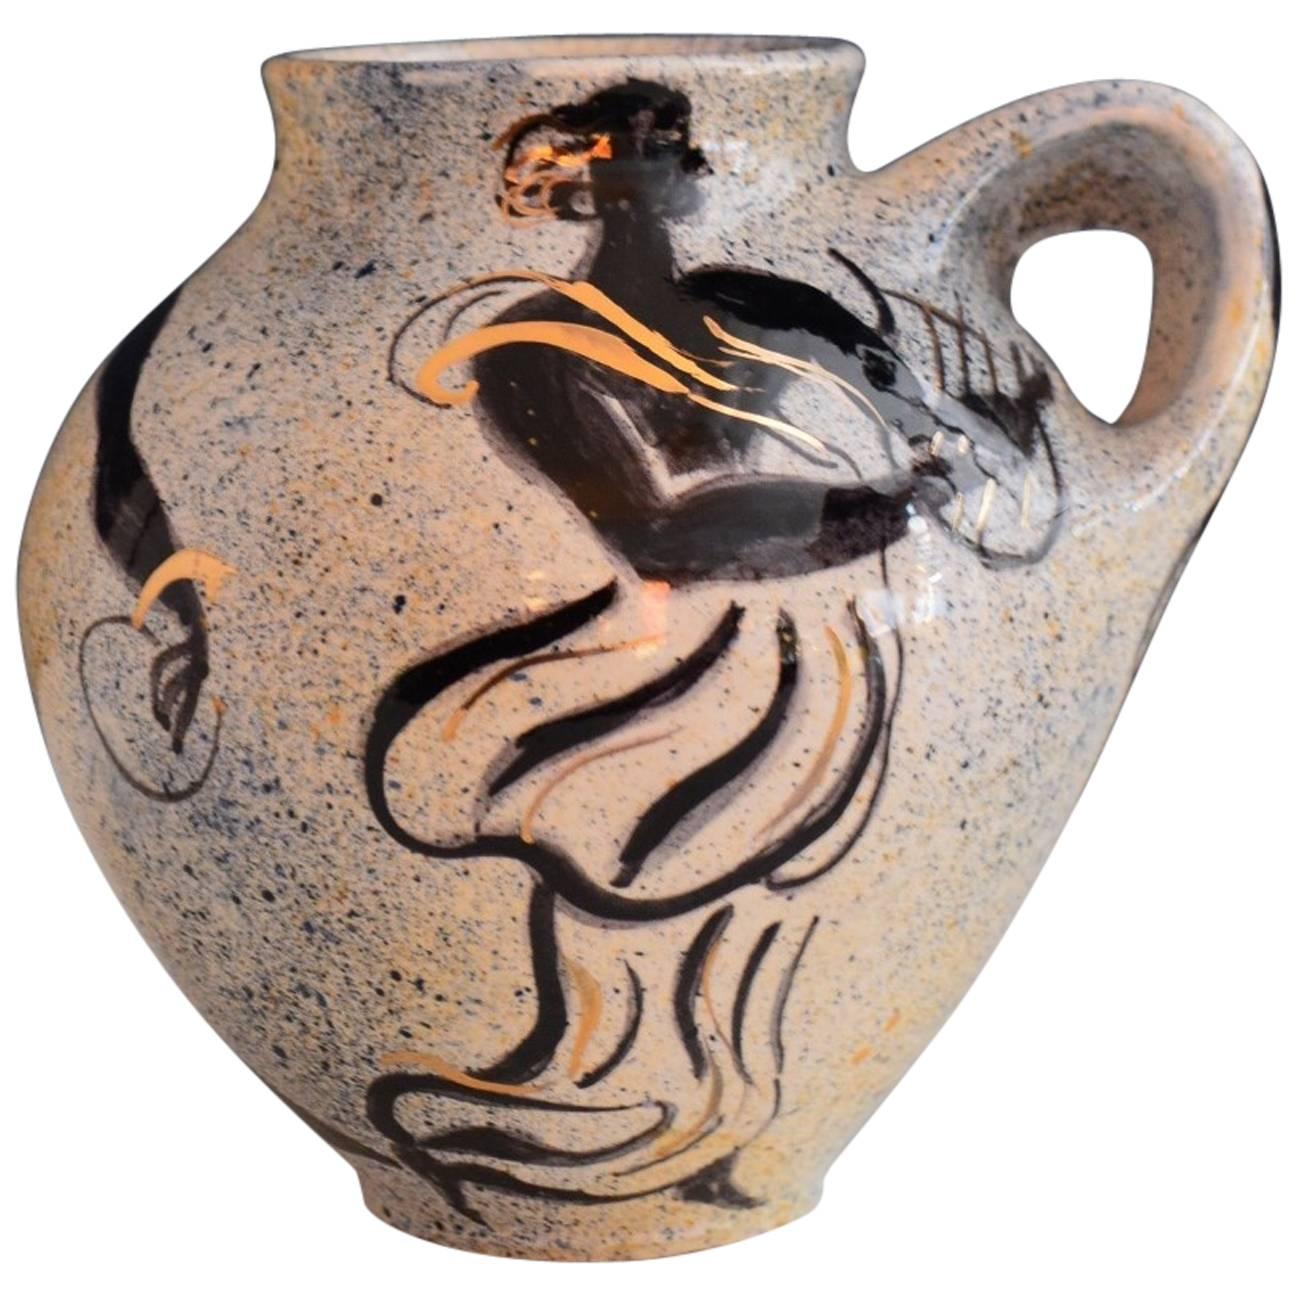 Vallauris Pierre Boncompain Original Artist Ceramic Vase, Signed, 1996